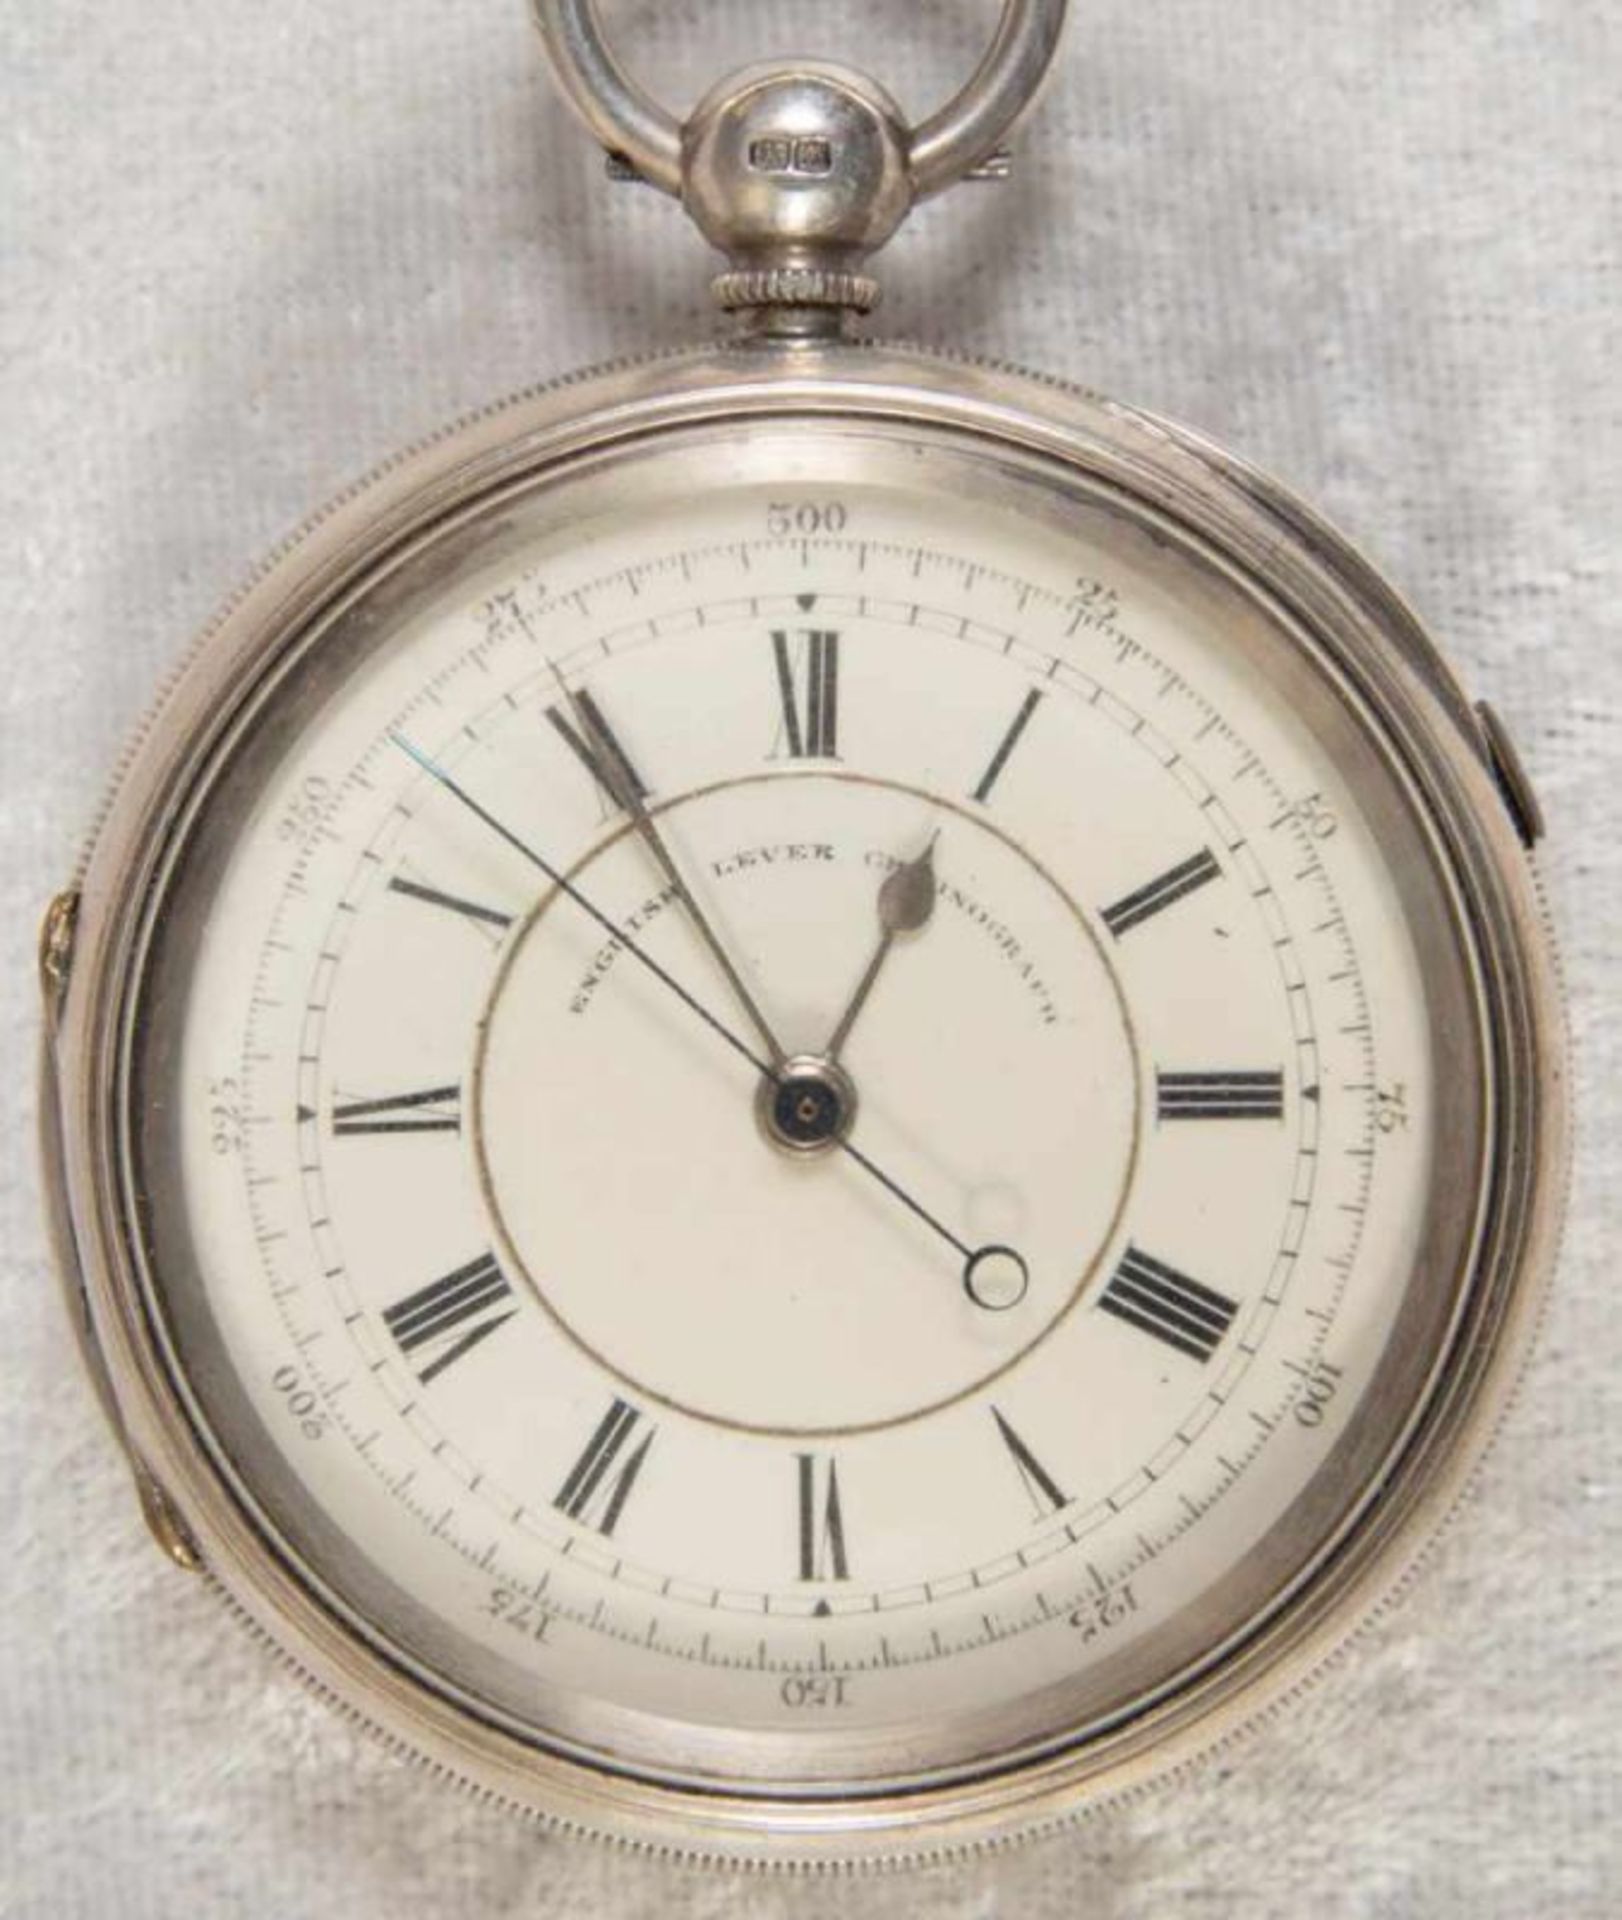 "English Lever Chronograph", Gehäuse in 925er Sterlingsilber, Werk & Gehäuse nummerngleich (No.